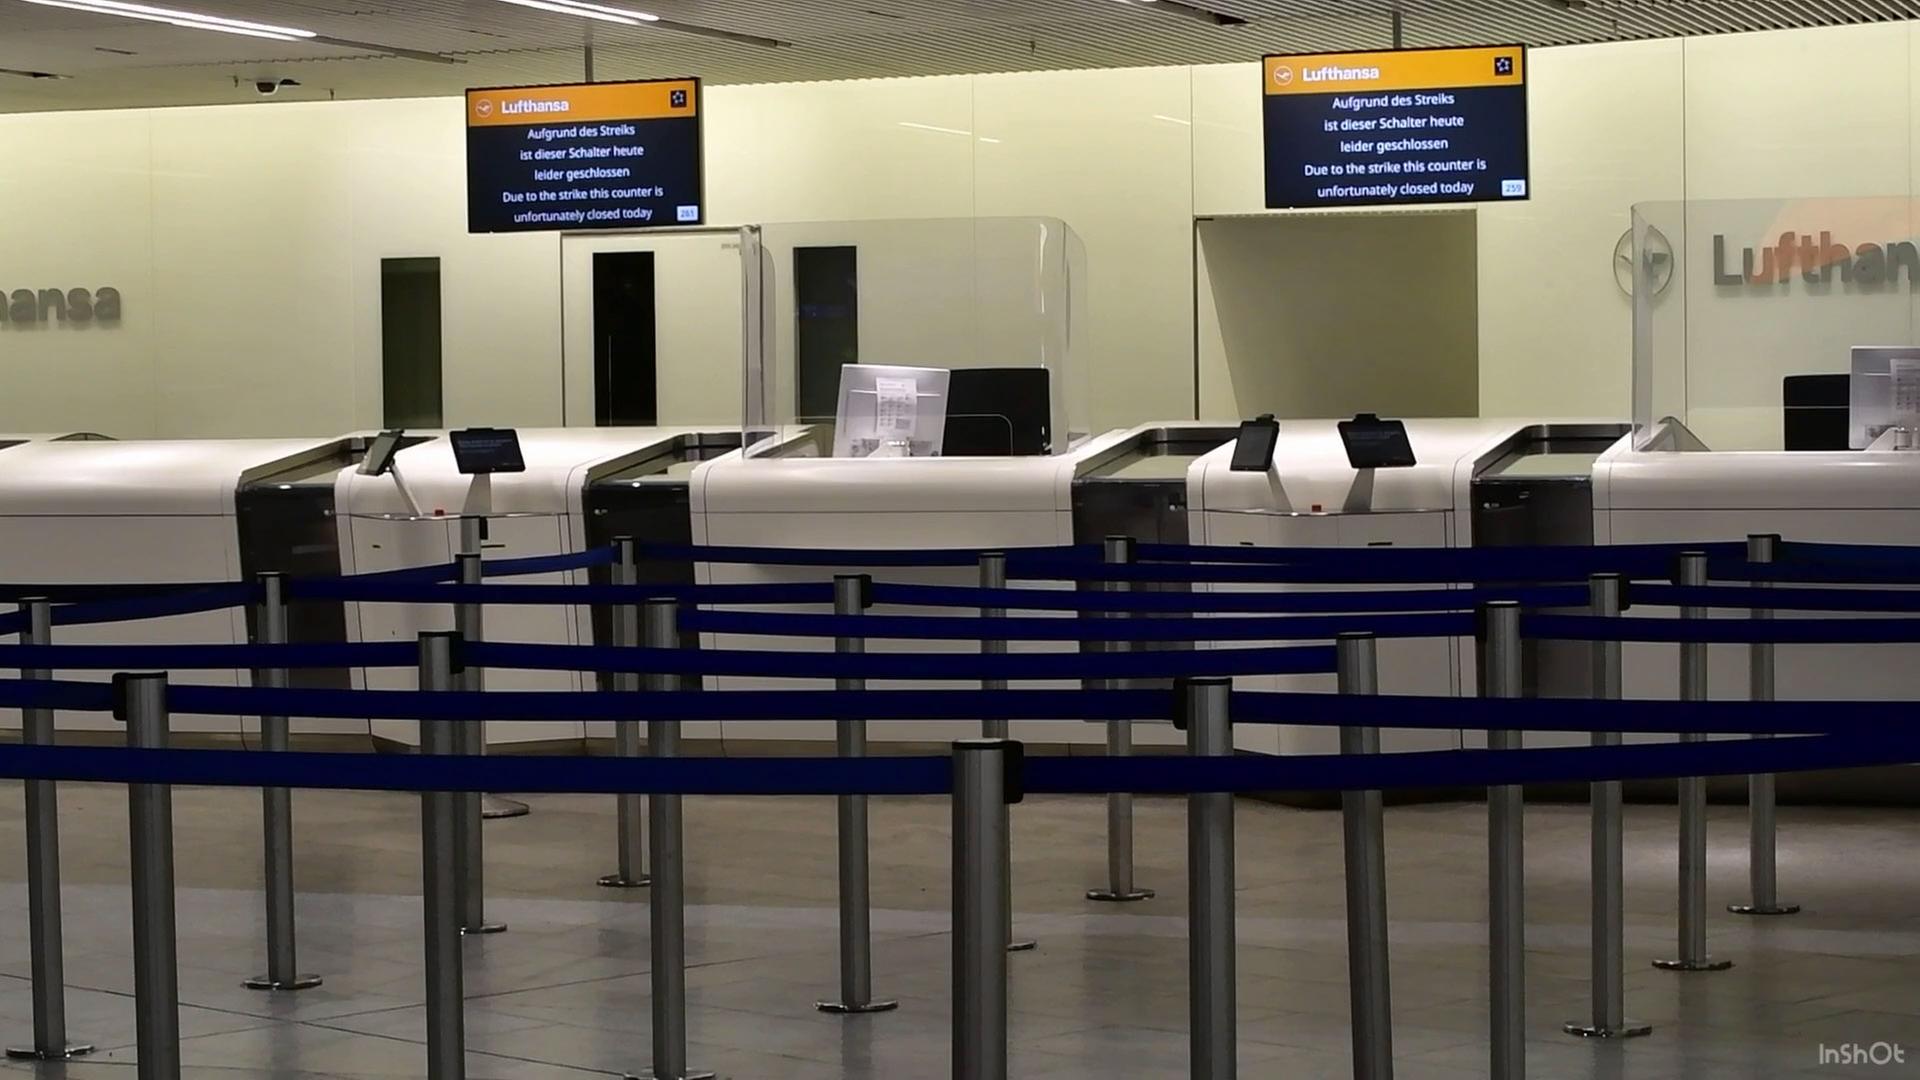 Am Flughafen Frankfurt am Main wird auf Displays wird angezeigt, dass die dahinter liegenden Lufthansa-Schalter aufgrund eines Streiks geschlossen sind.